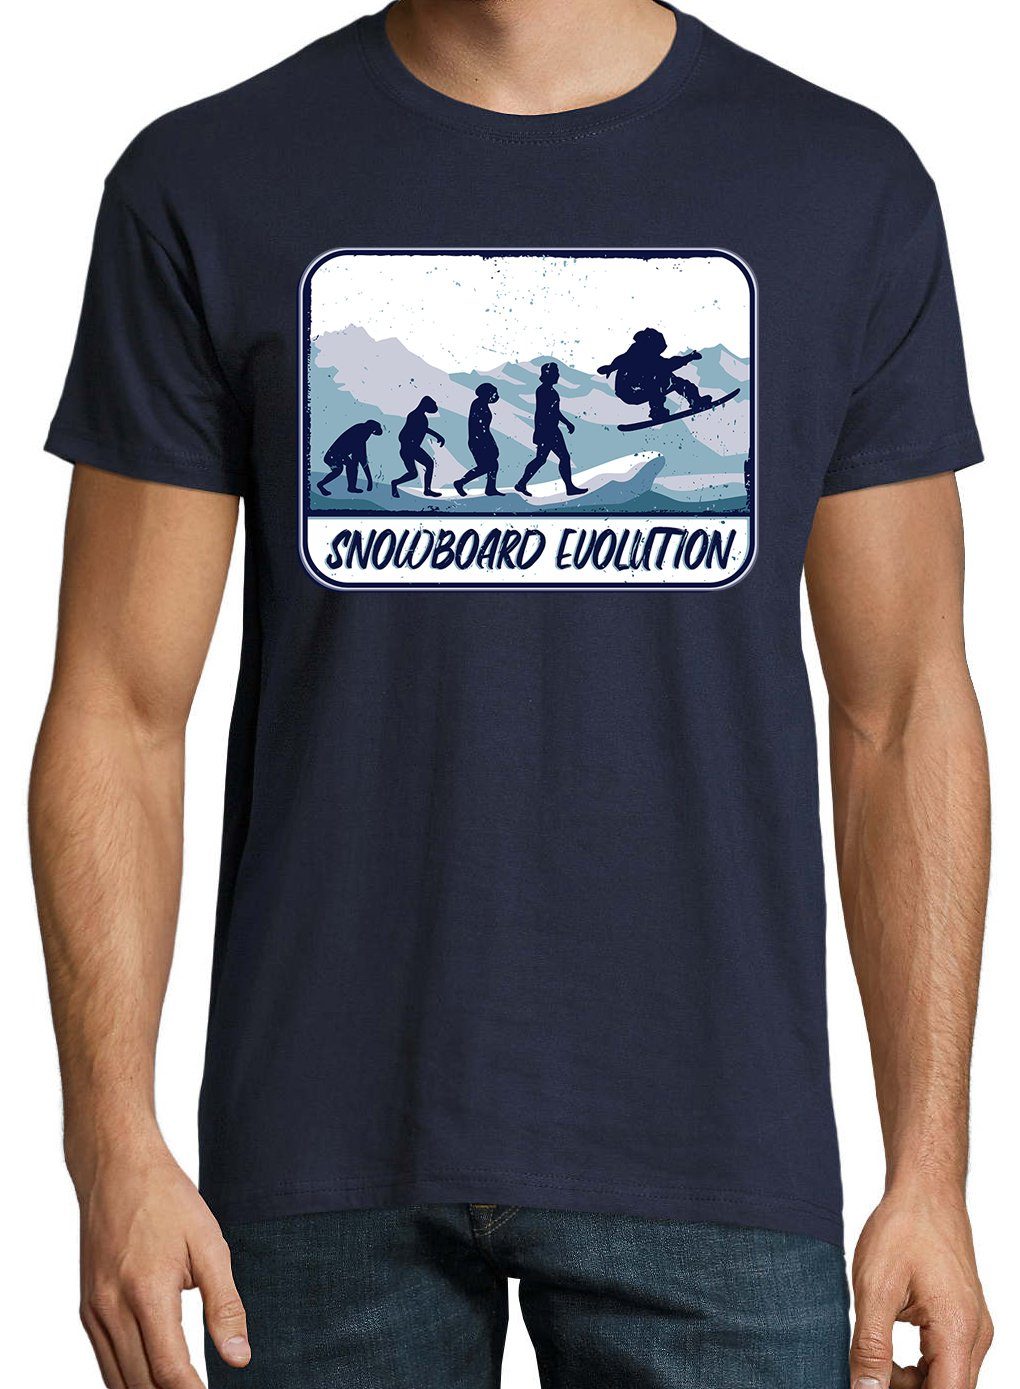 Evolution T-Shirt Frontprint mit Designz Navyblau Herren Youth Shirt trendigem Snowboard